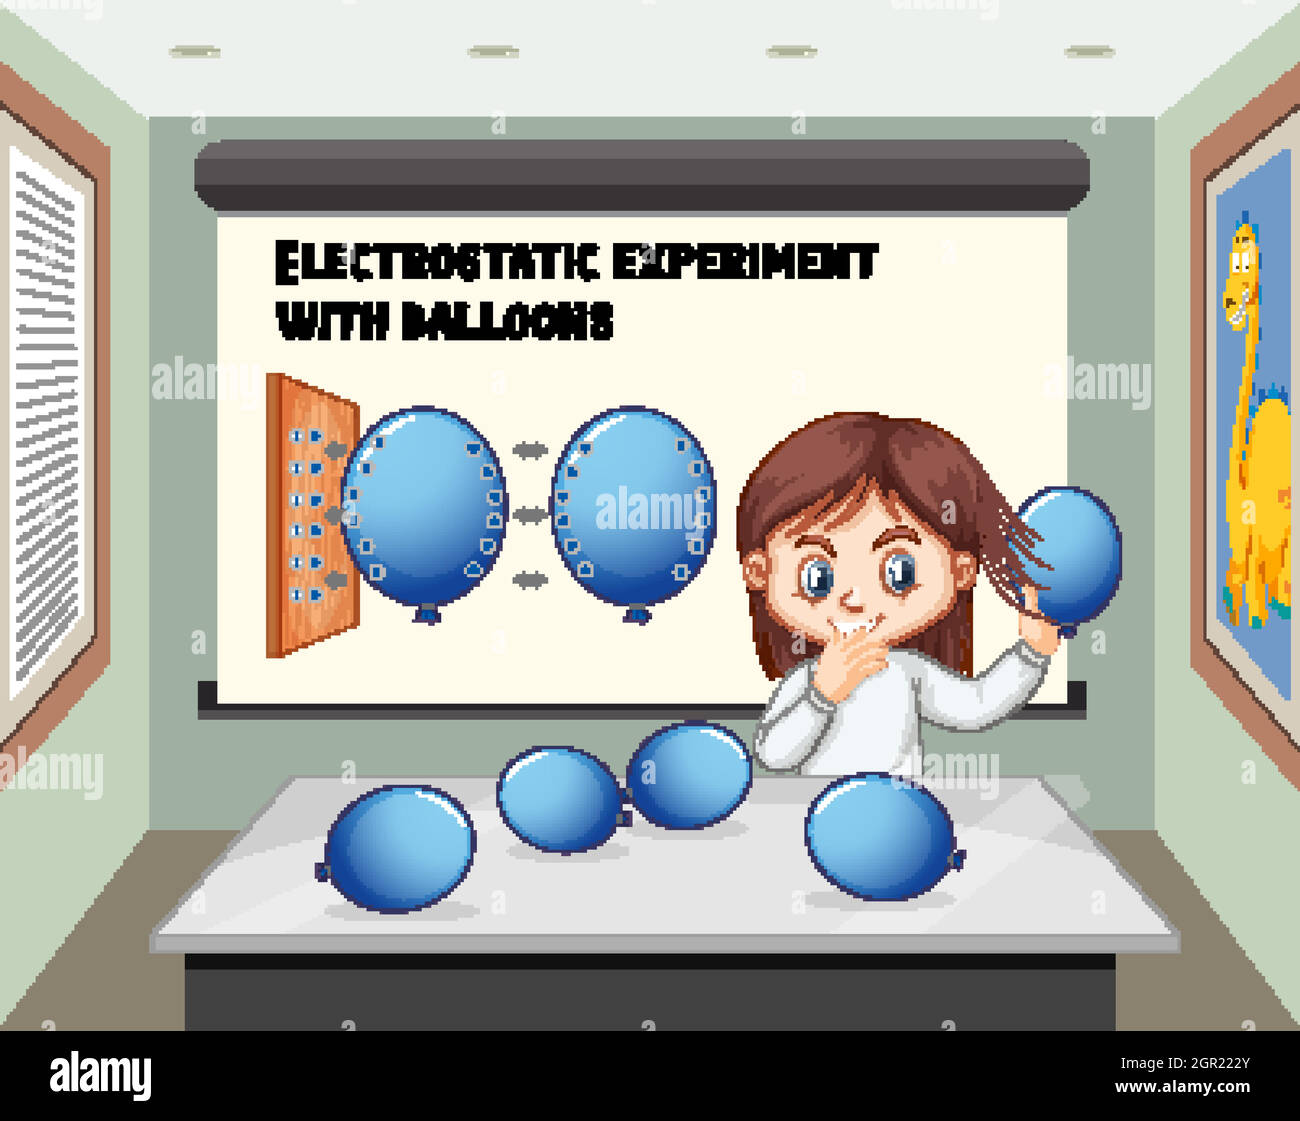 Ein Mädchen, das elektrostatische Experimente mit Ballons im Raum macht Stock Vektor